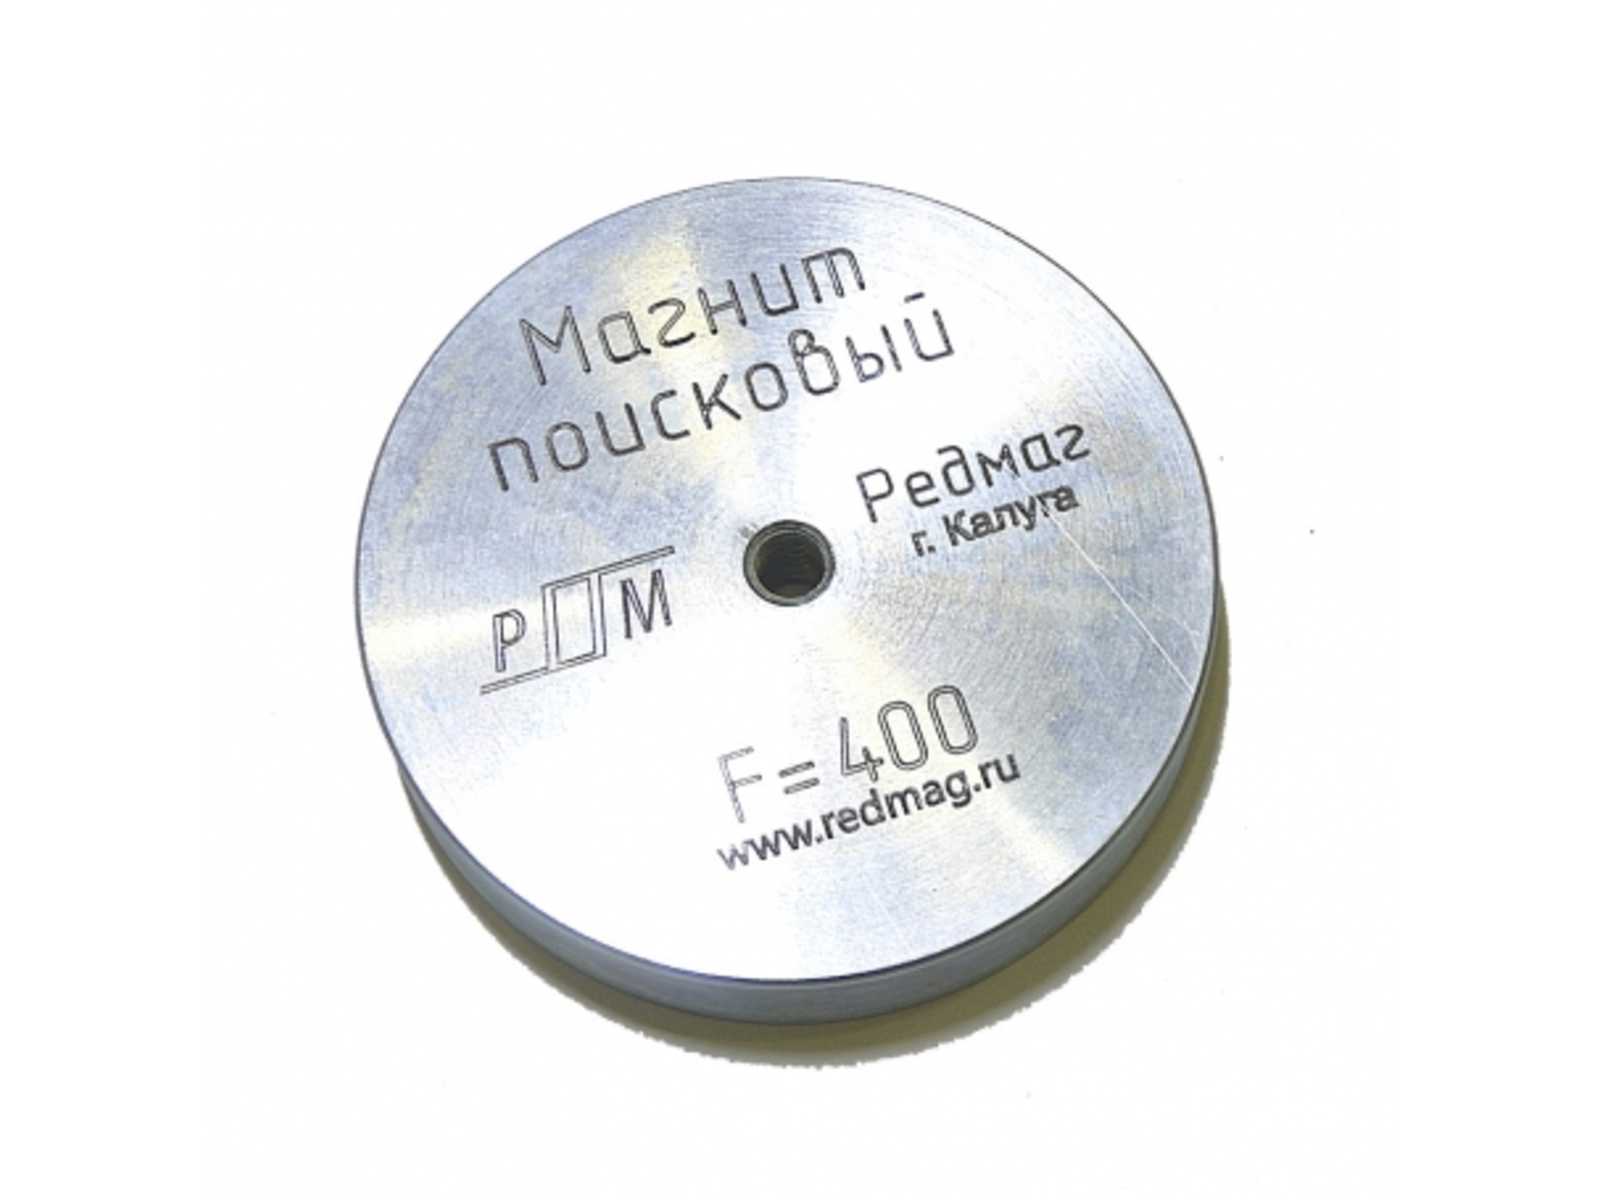 Поисковый магнит Редмаг F400 (односторонний) поисковый магнит редмаг 2 f400 двусторонний